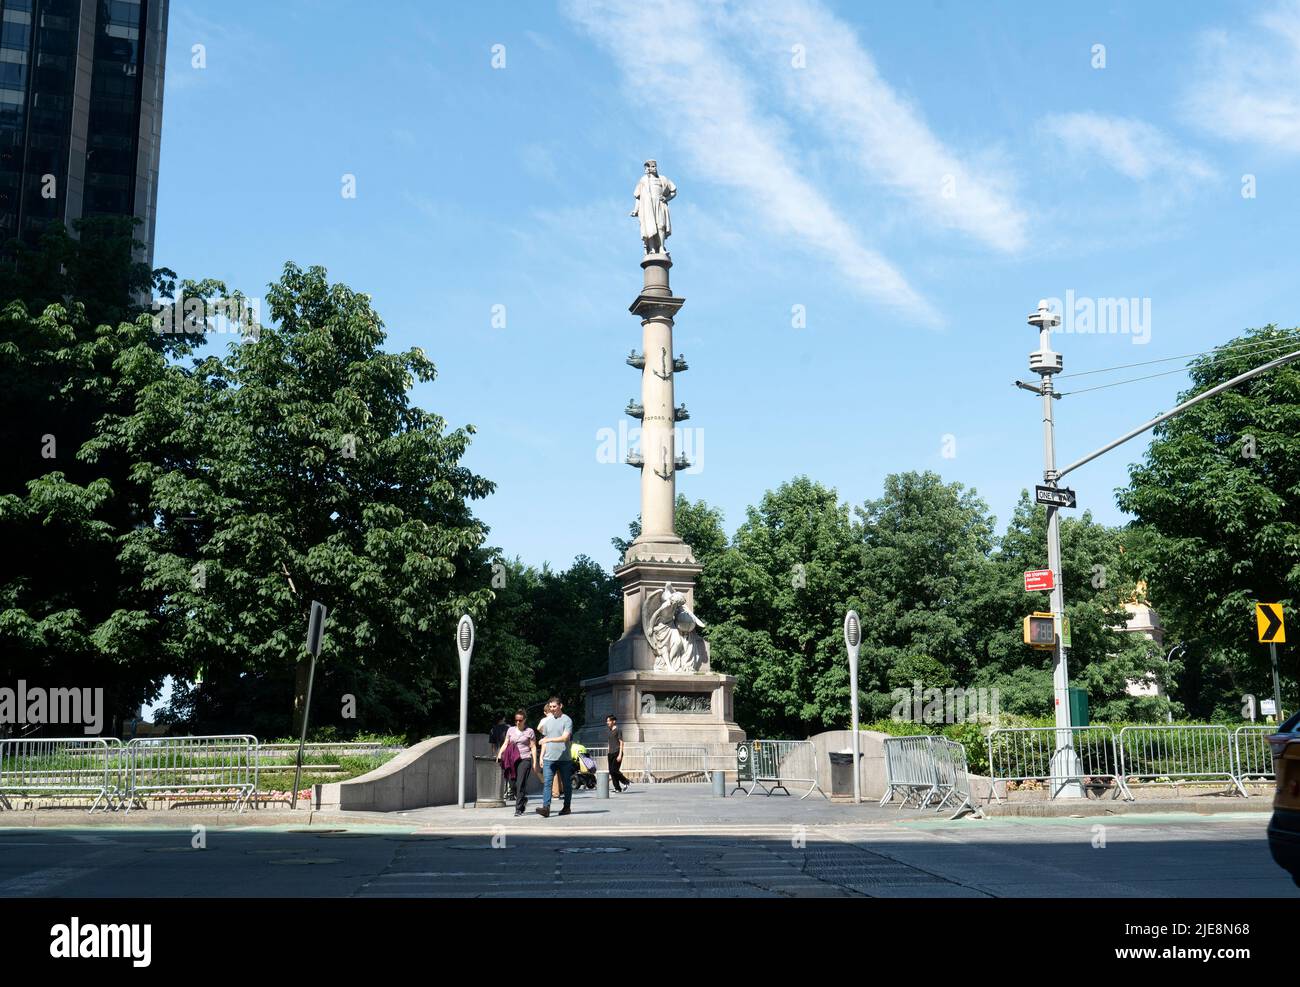 Das Columbus Monument besteht aus einer 14 Meter hohen Statue auf einer Säule, die im Zentrum von Manhattans Columbus Circle in New York City installiert ist. Stockfoto